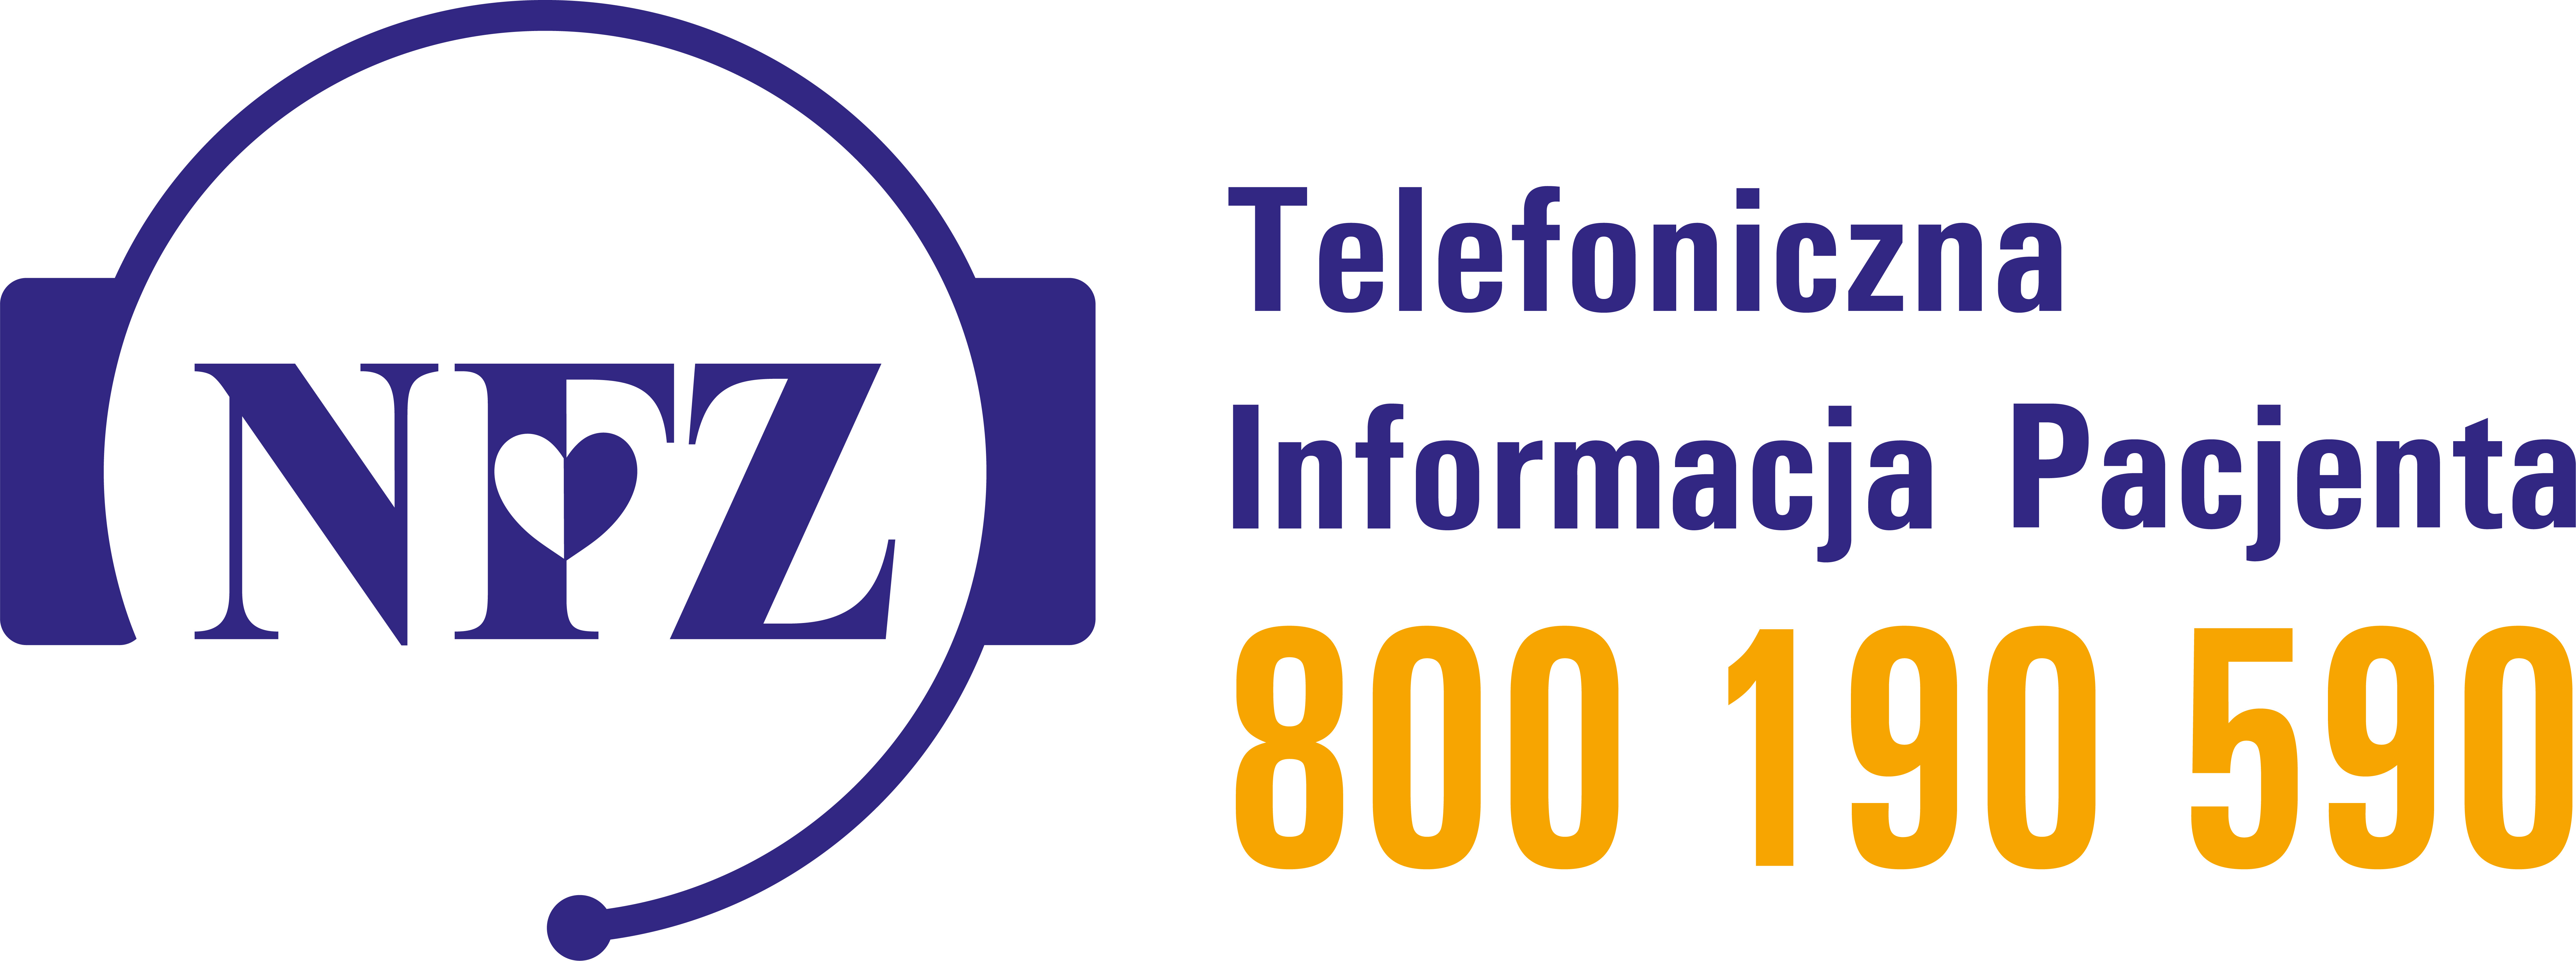 You are currently viewing Telefoniczna Informacja Pacjenta – źródło informacji o systemie ochrony zdrowia w Polsce